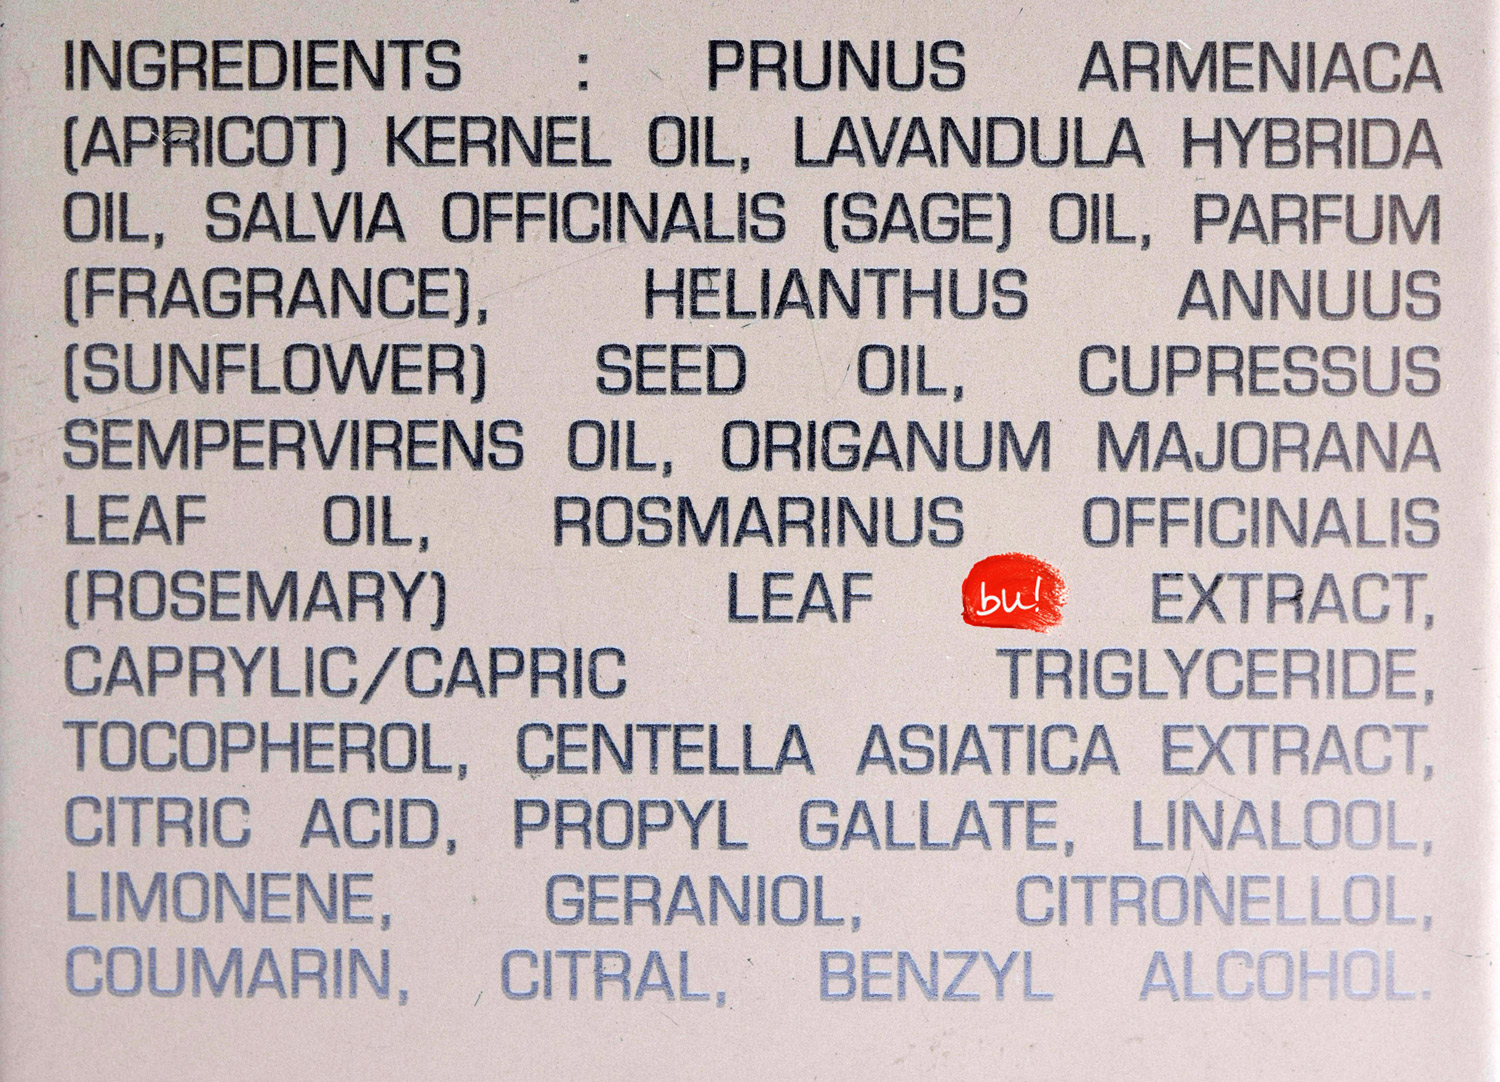 anne-semonin-apricot-kernel-oil